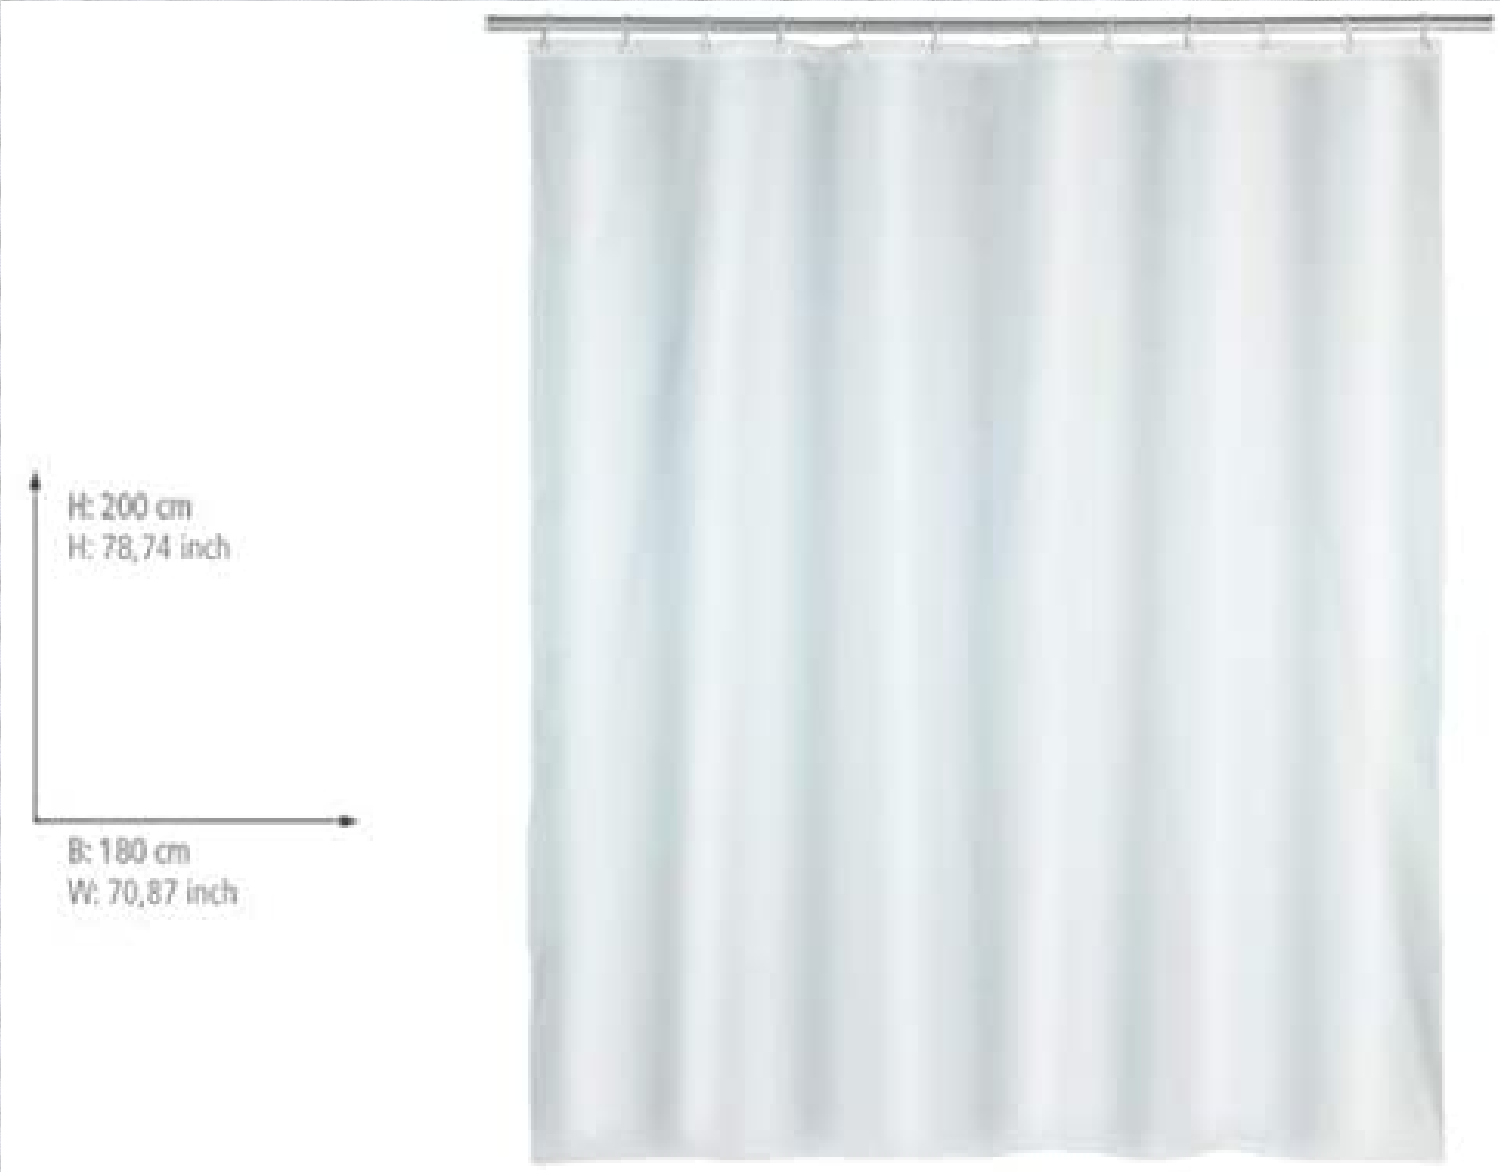 Duschvorhang Punto Weiß - Textil , waschbar, wasserabweisend, mit 12 Duschvorhangringen, Polyester, 180 x 200 cm, Weiß